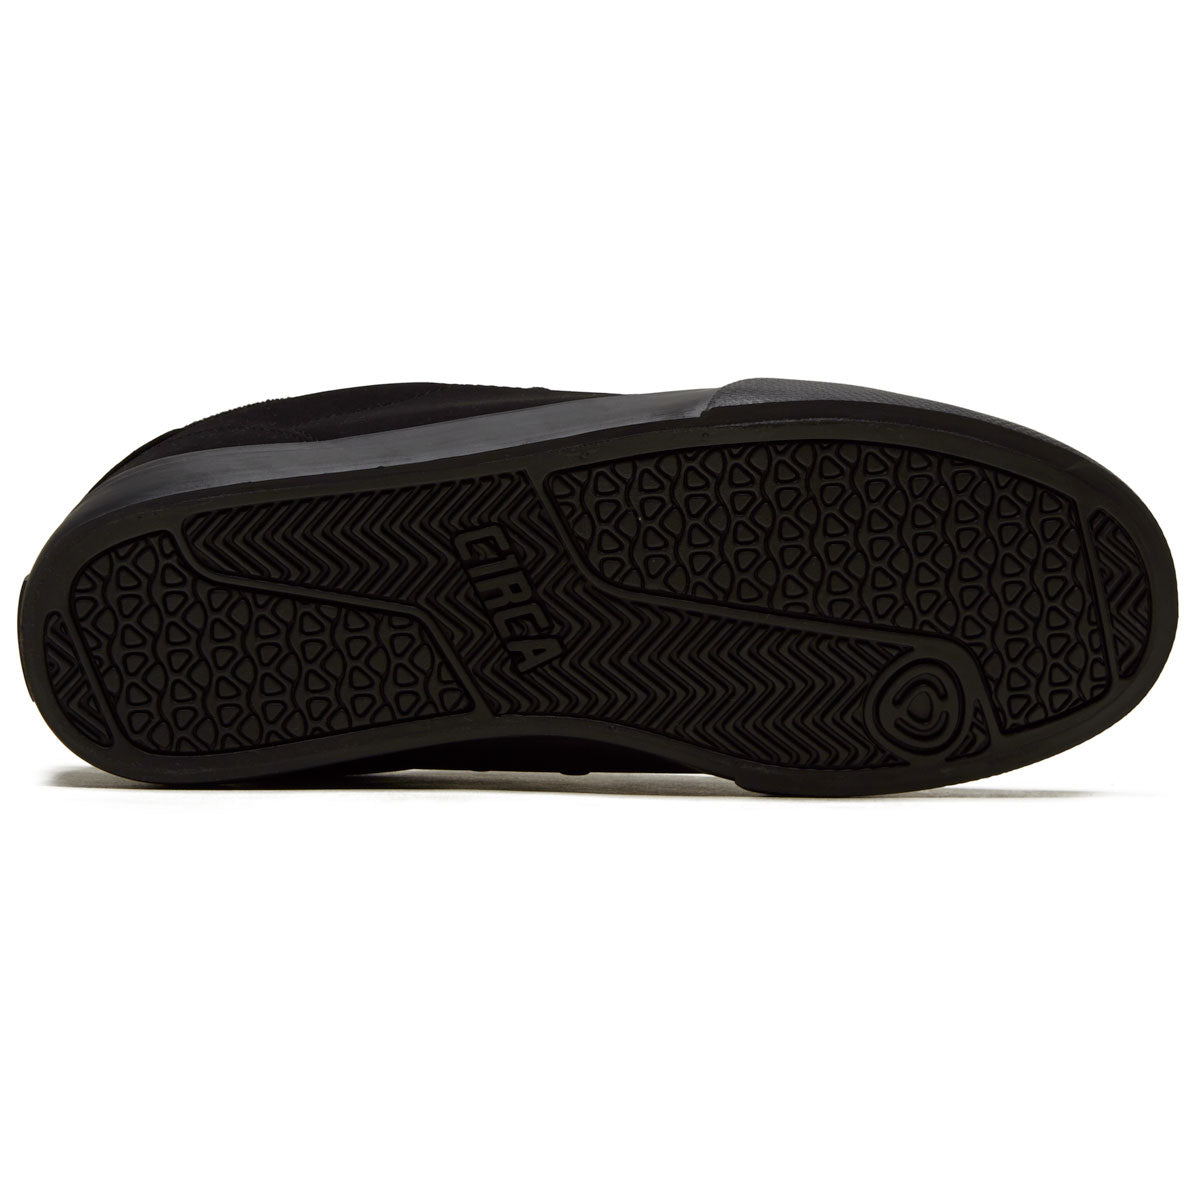 C1rca AL50 Shoes - Black/Black/Synthetic image 4